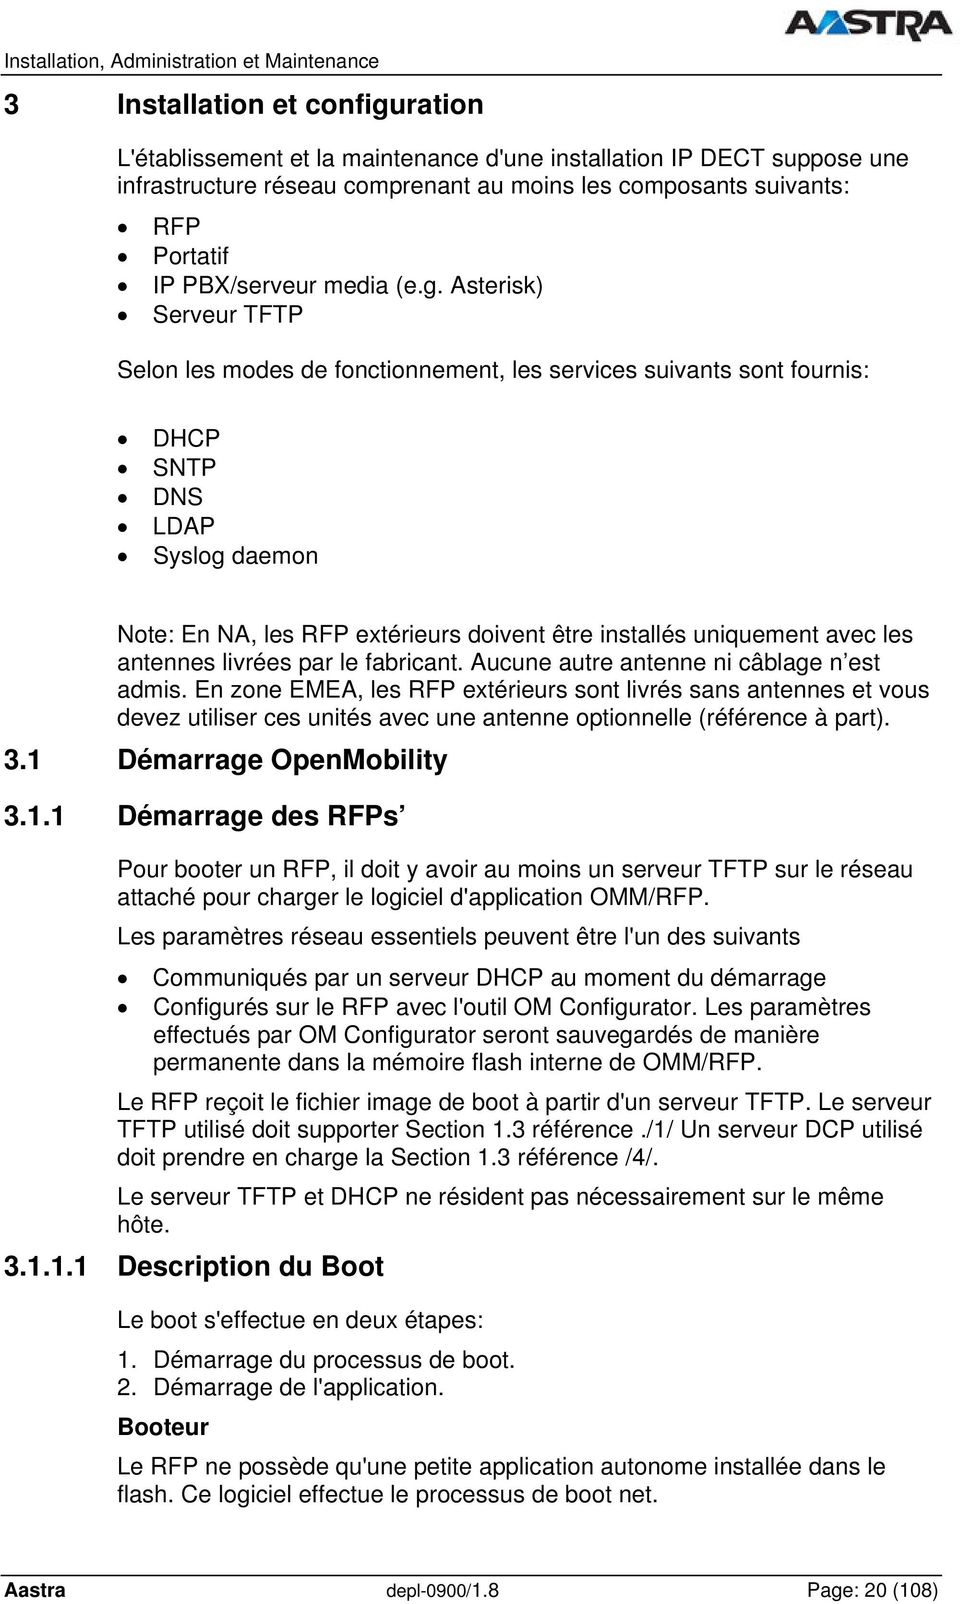 Asterisk) Serveur TFTP Selon les modes de fonctionnement, les services suivants sont fournis: DHCP SNTP DNS LDAP Syslog daemon Note: En NA, les RFP extérieurs doivent être installés uniquement avec